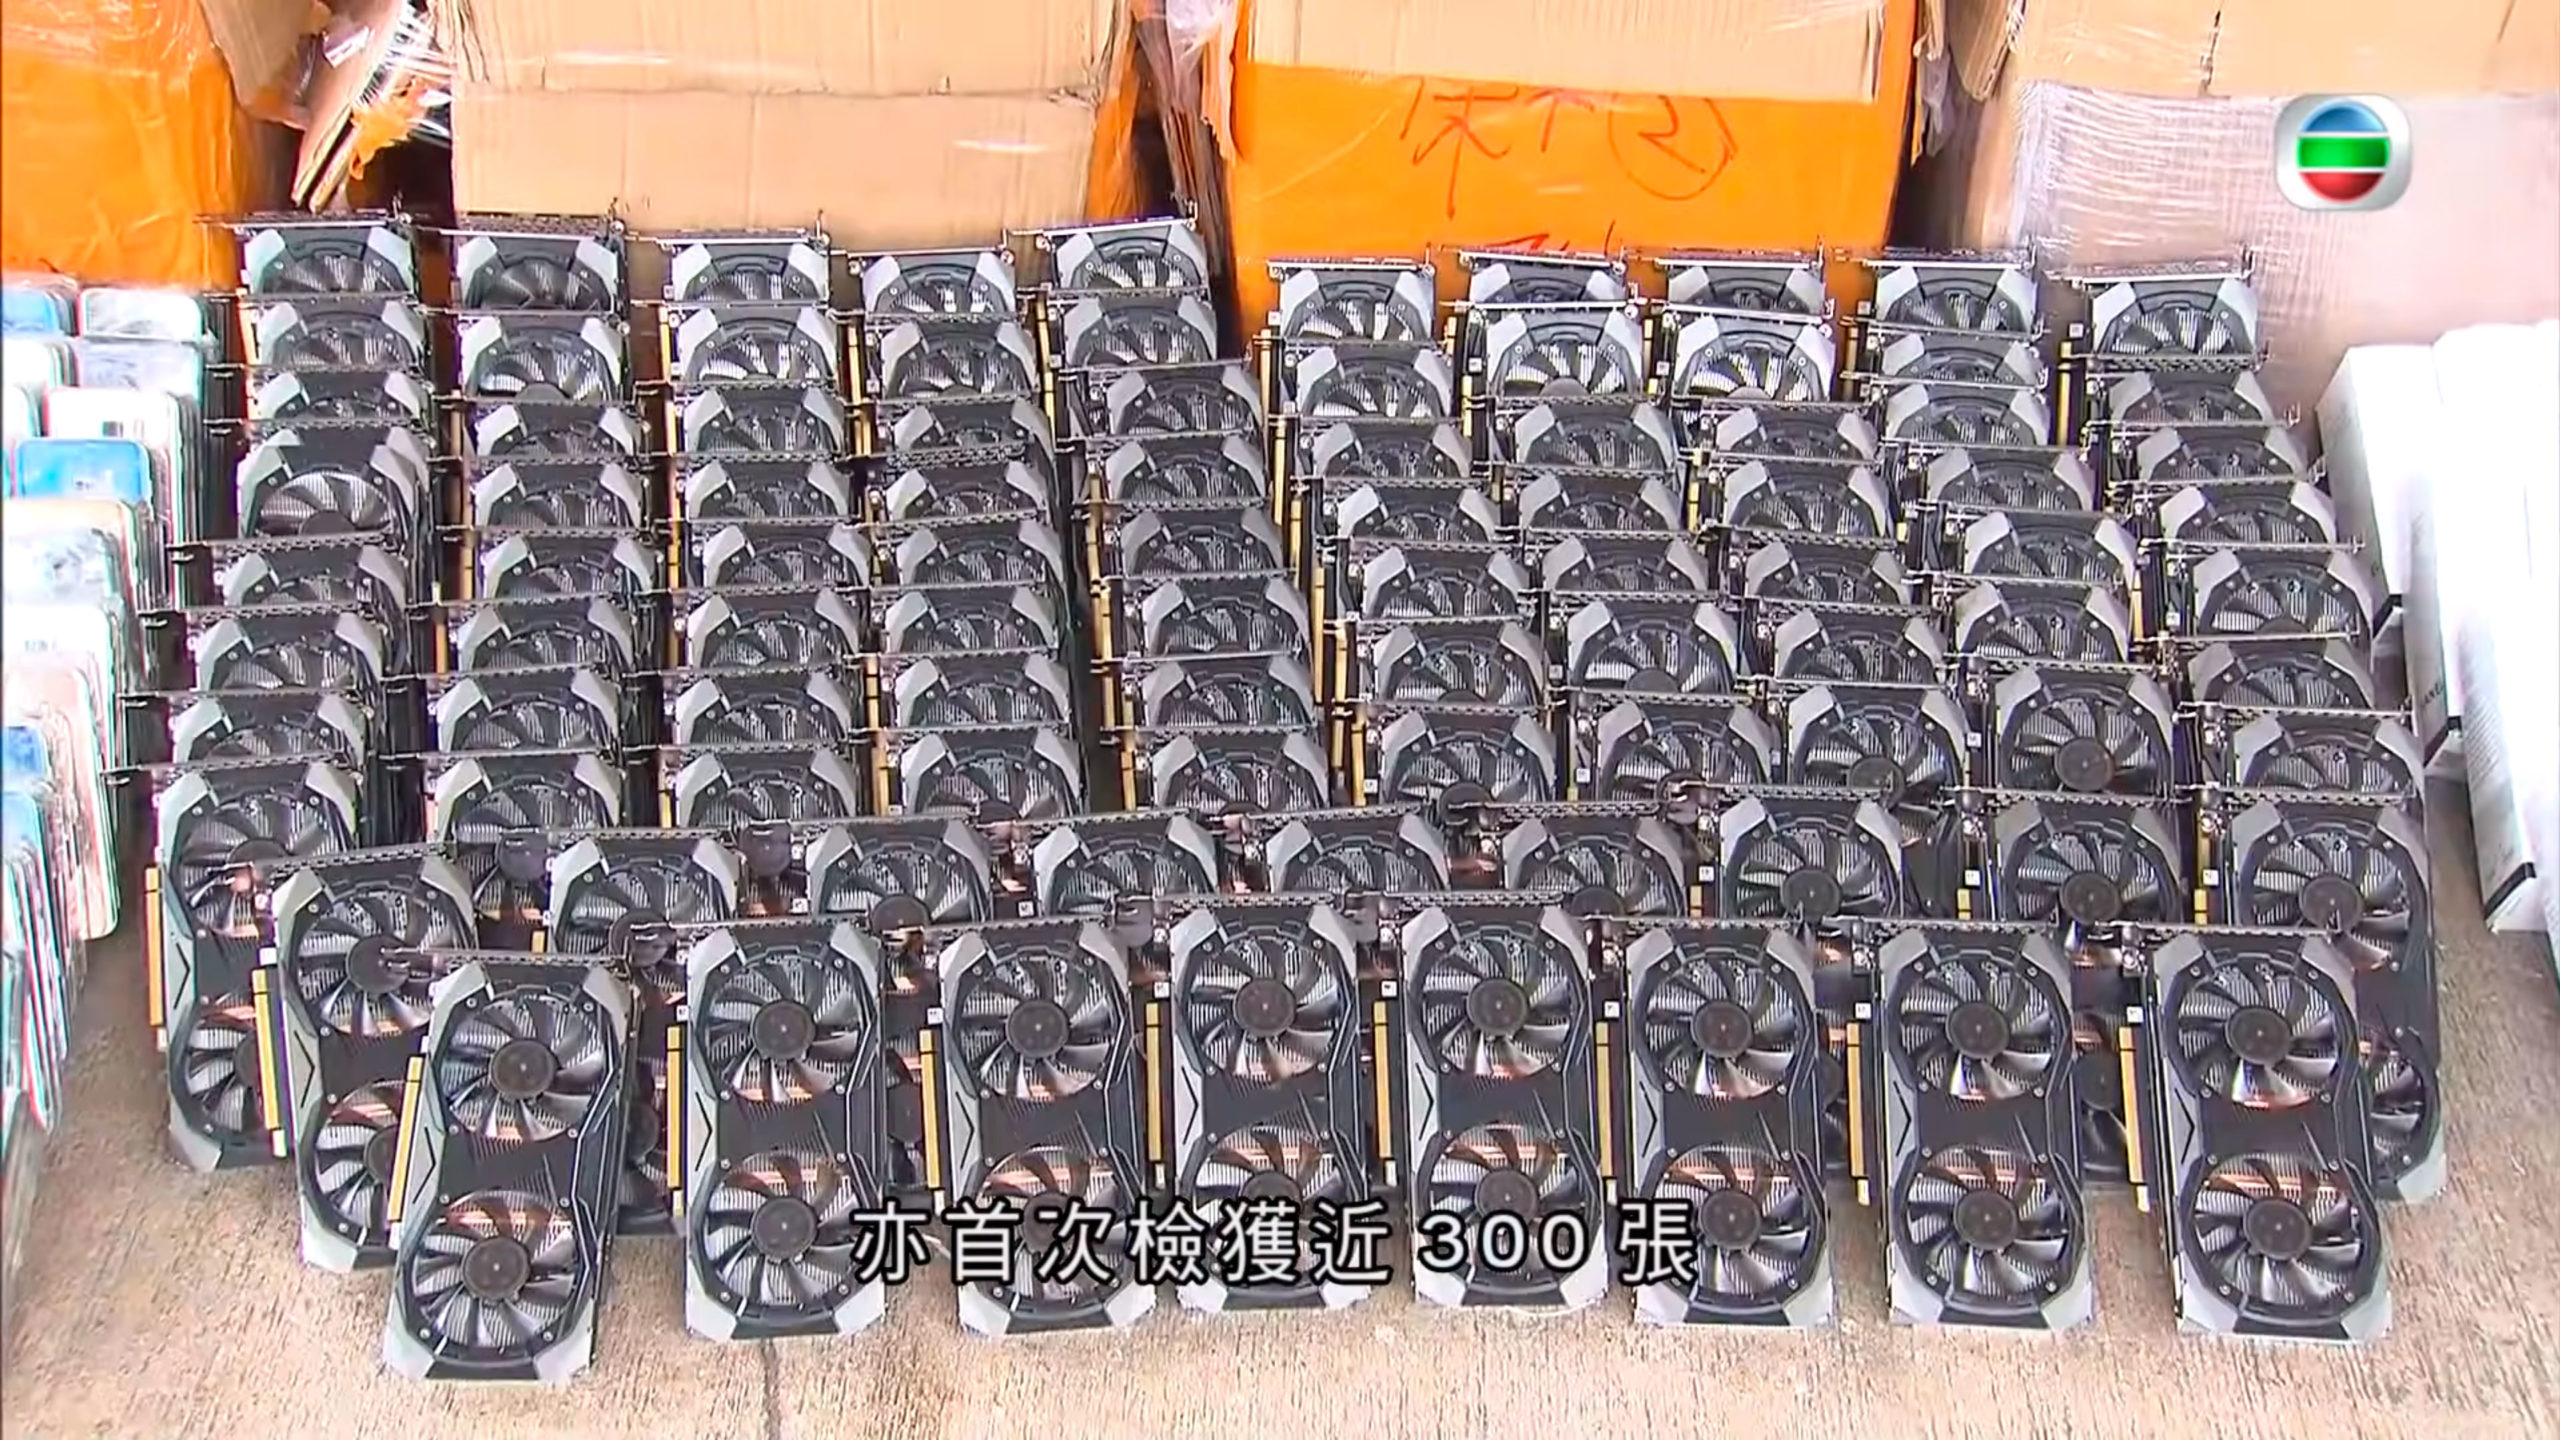 hong-kong-customs-busts-gpu-smugglers,-seizes-300-nvidia-cmp-30hx-gpus